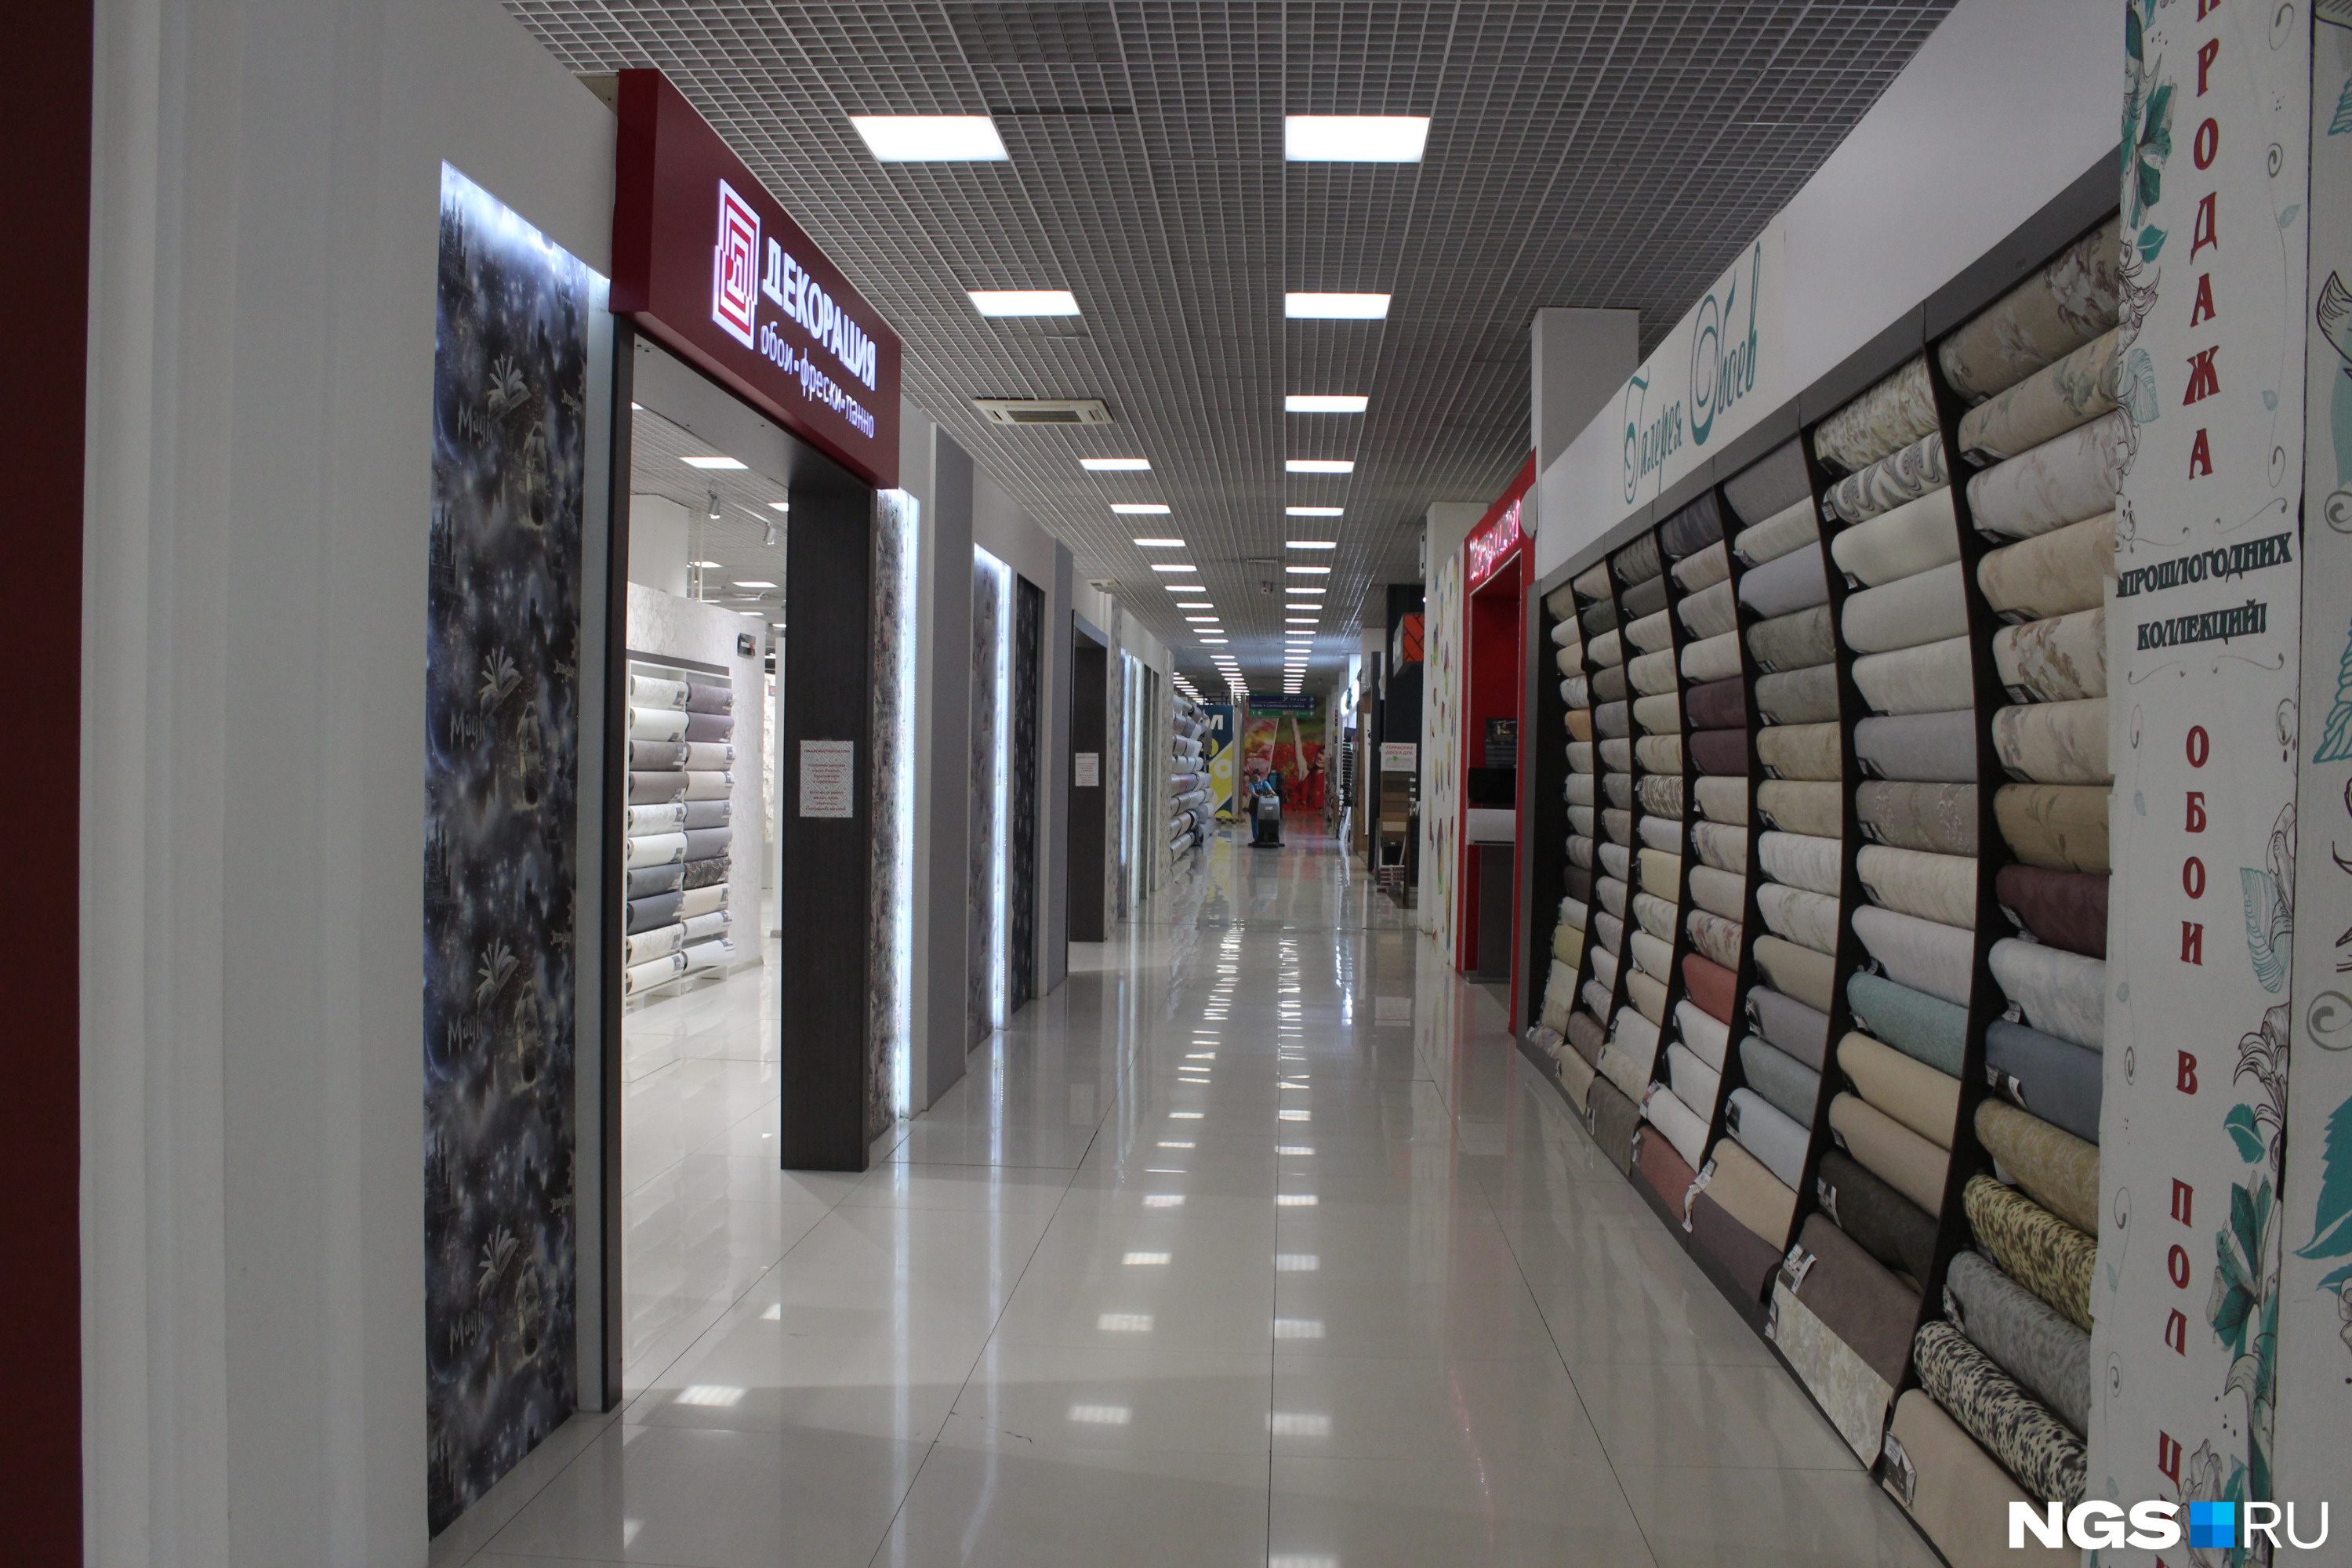 Первый этаж ТЦ занимают в основном магазины отделочных материалов и сантехники